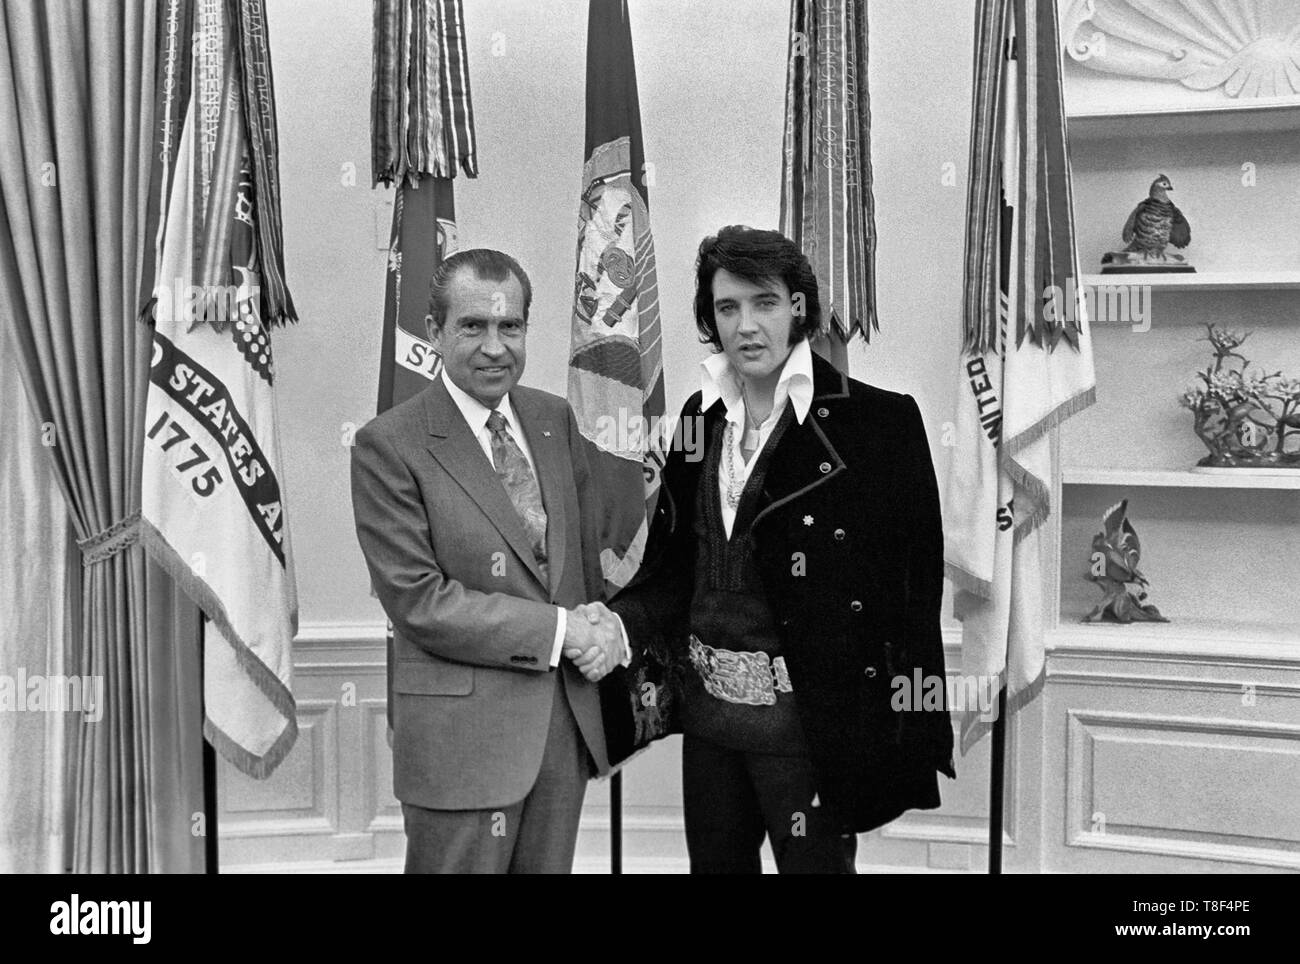 Elvis Presley Incontro Richard Nixon. Il 21 dicembre 1970, su sua richiesta, Presley ha incontrato l'allora presidente Richard Nixon nell'Ufficio Ovale della Casa Bianca. Elvis è sulla destra. Waggishly, questa immagine è detto di essere 'di due grandi artisti del XX secolo". Foto Stock